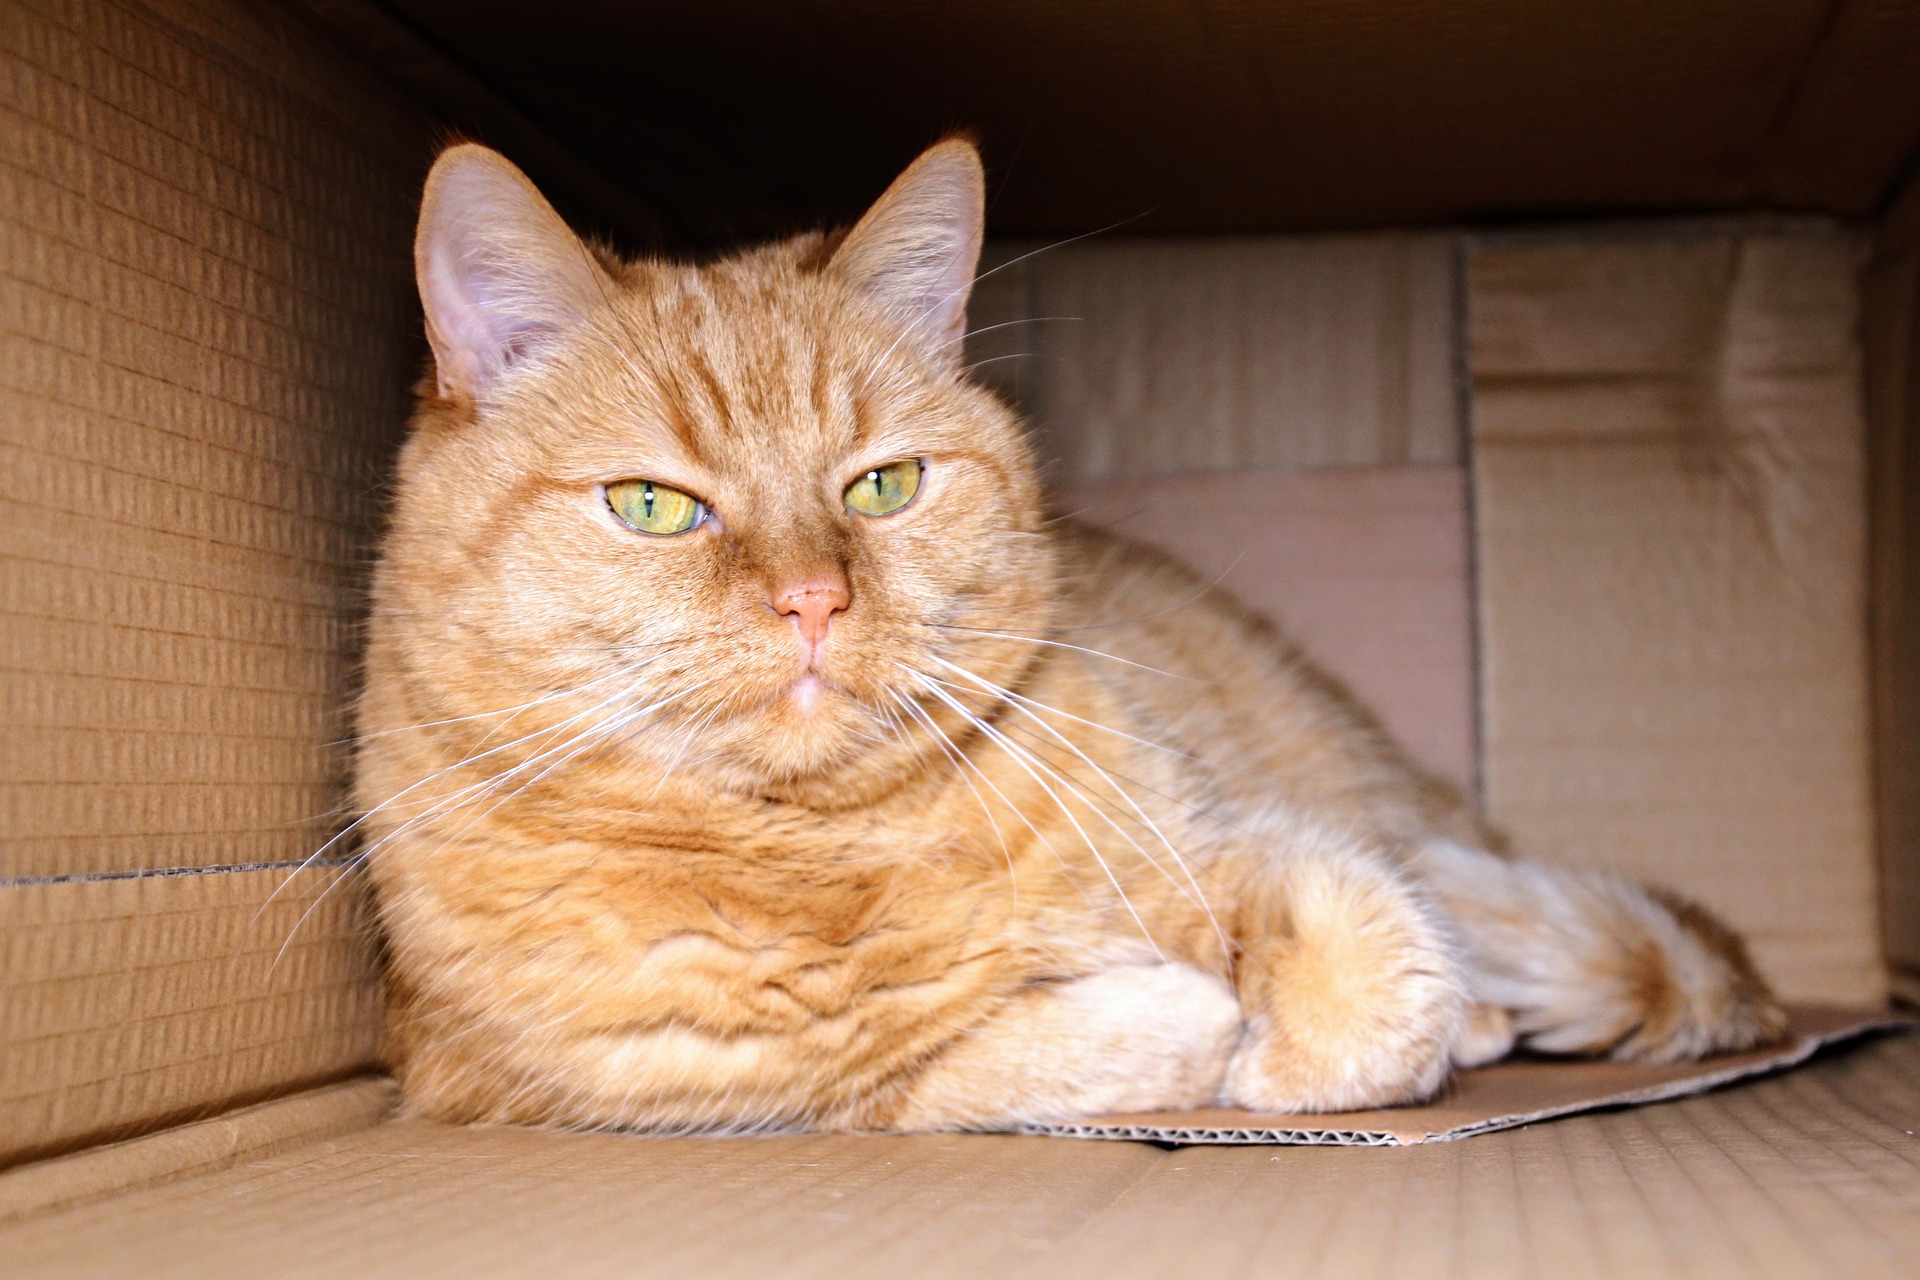 V krabici je kočka spokojená